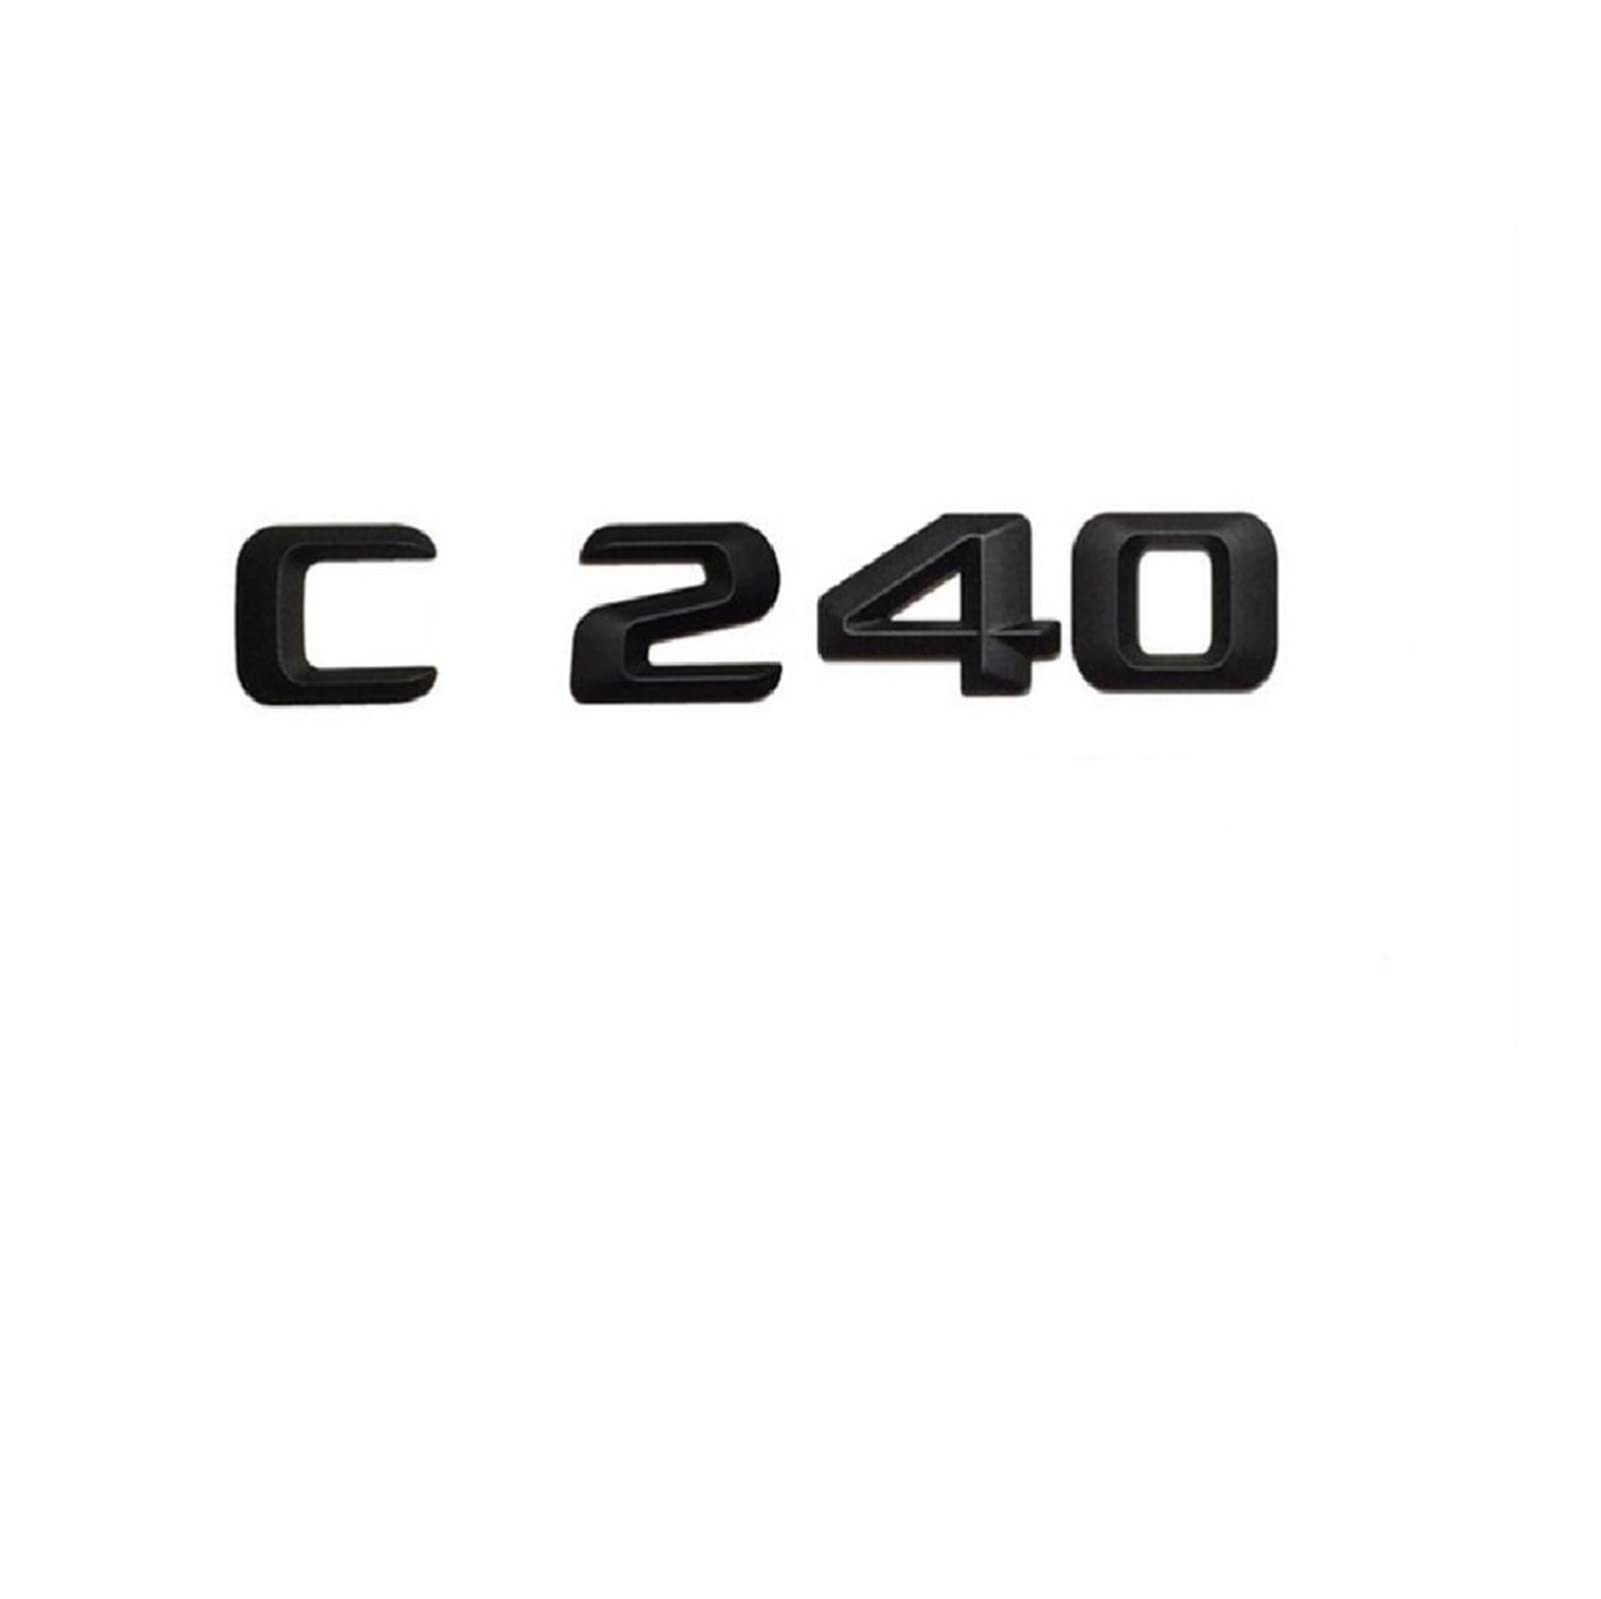 LHYFAGQK Mattschwarz C 240" Kofferraum-hintere Buchstaben, Wörter, Zahlen, Abzeichen, Emblem, Aufkleber, kompatibel mit Mercedes Benz C-Klasse C240 Abzeichen Autoaufkleber von LHYFAGQK